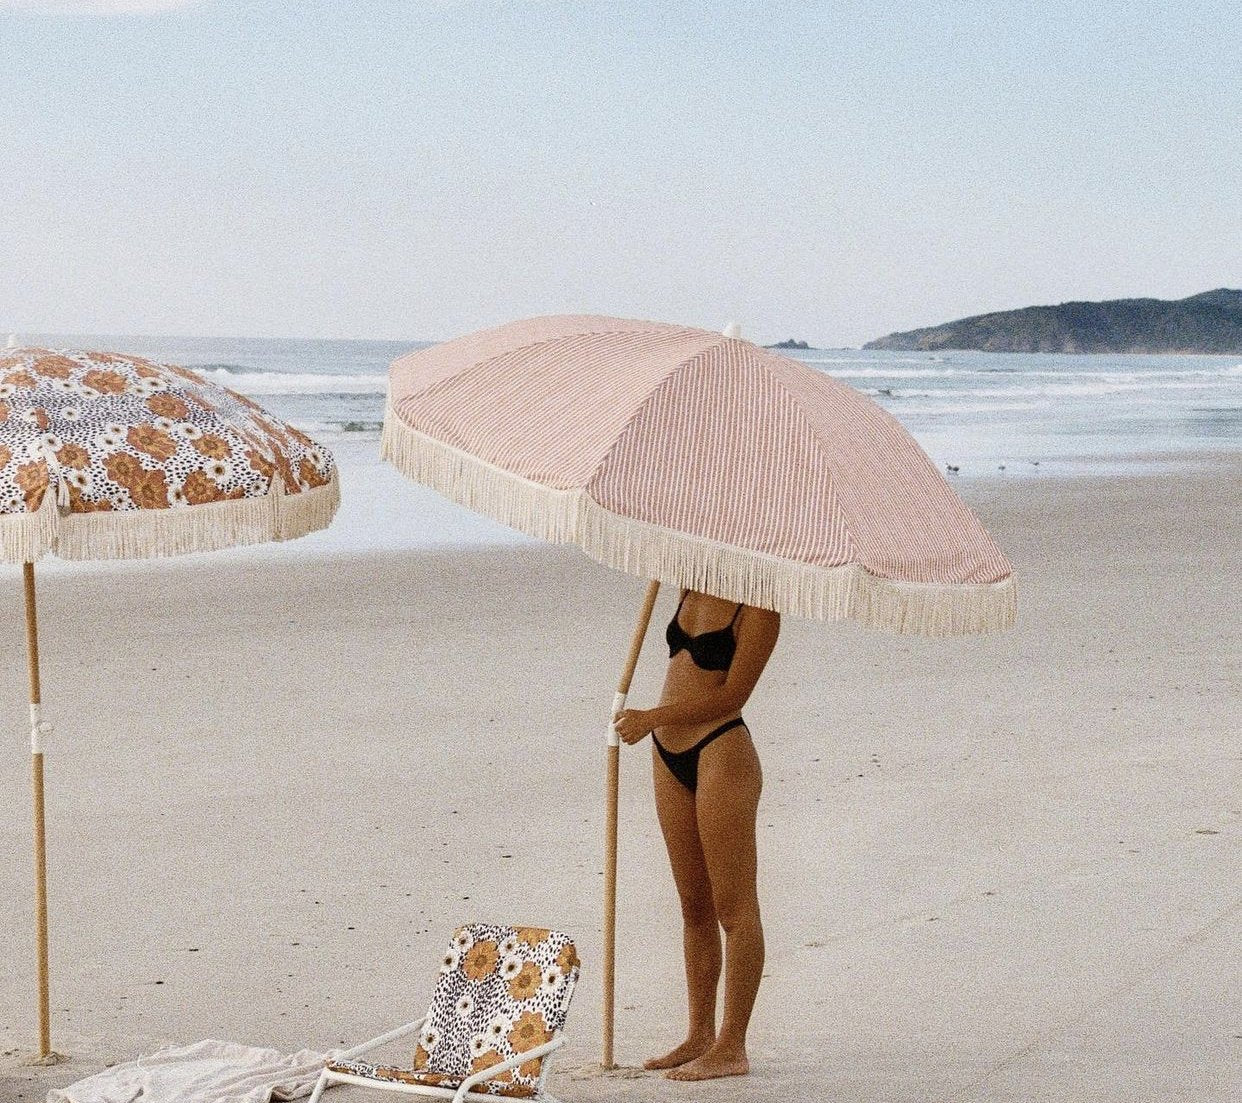 Summer Deck Beach Umbrella